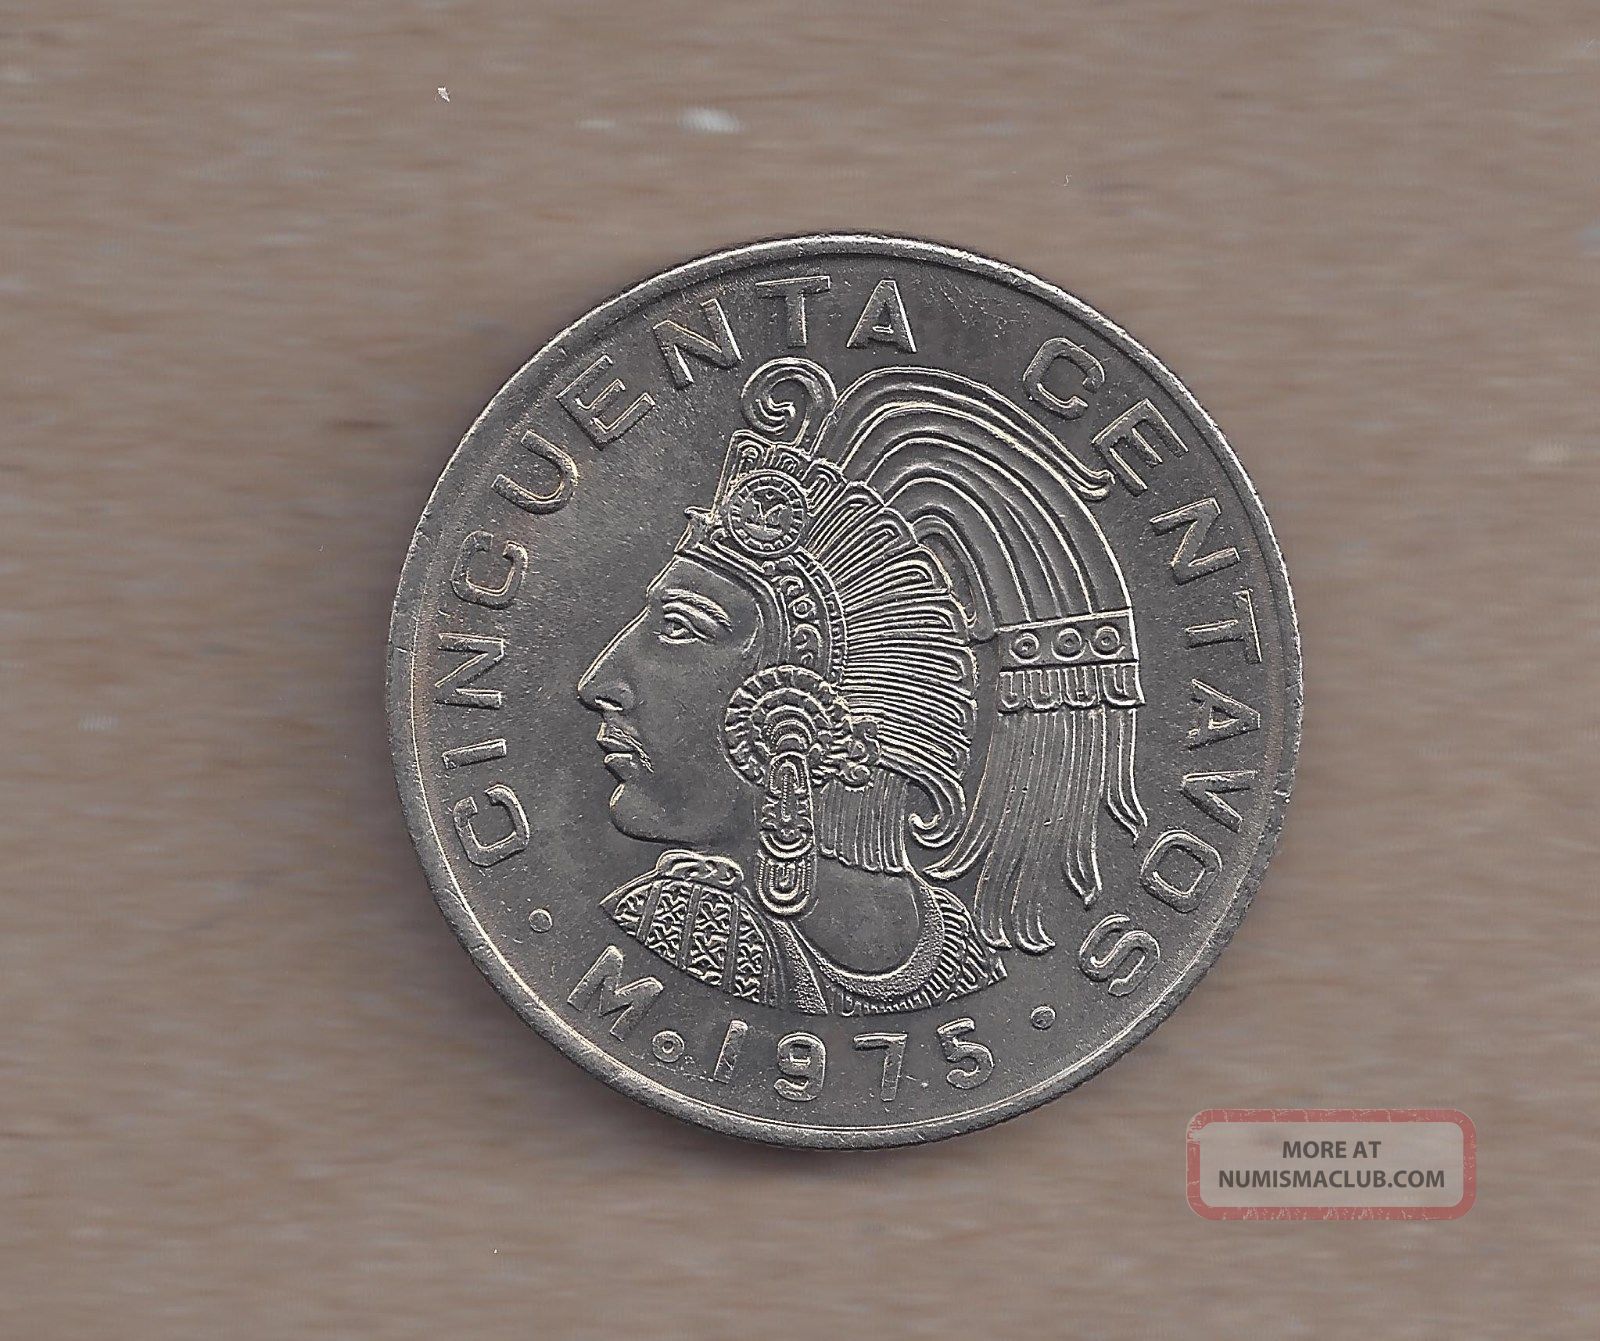 1975 Mexico Cincuenta Centavos With Dots Unc Coin